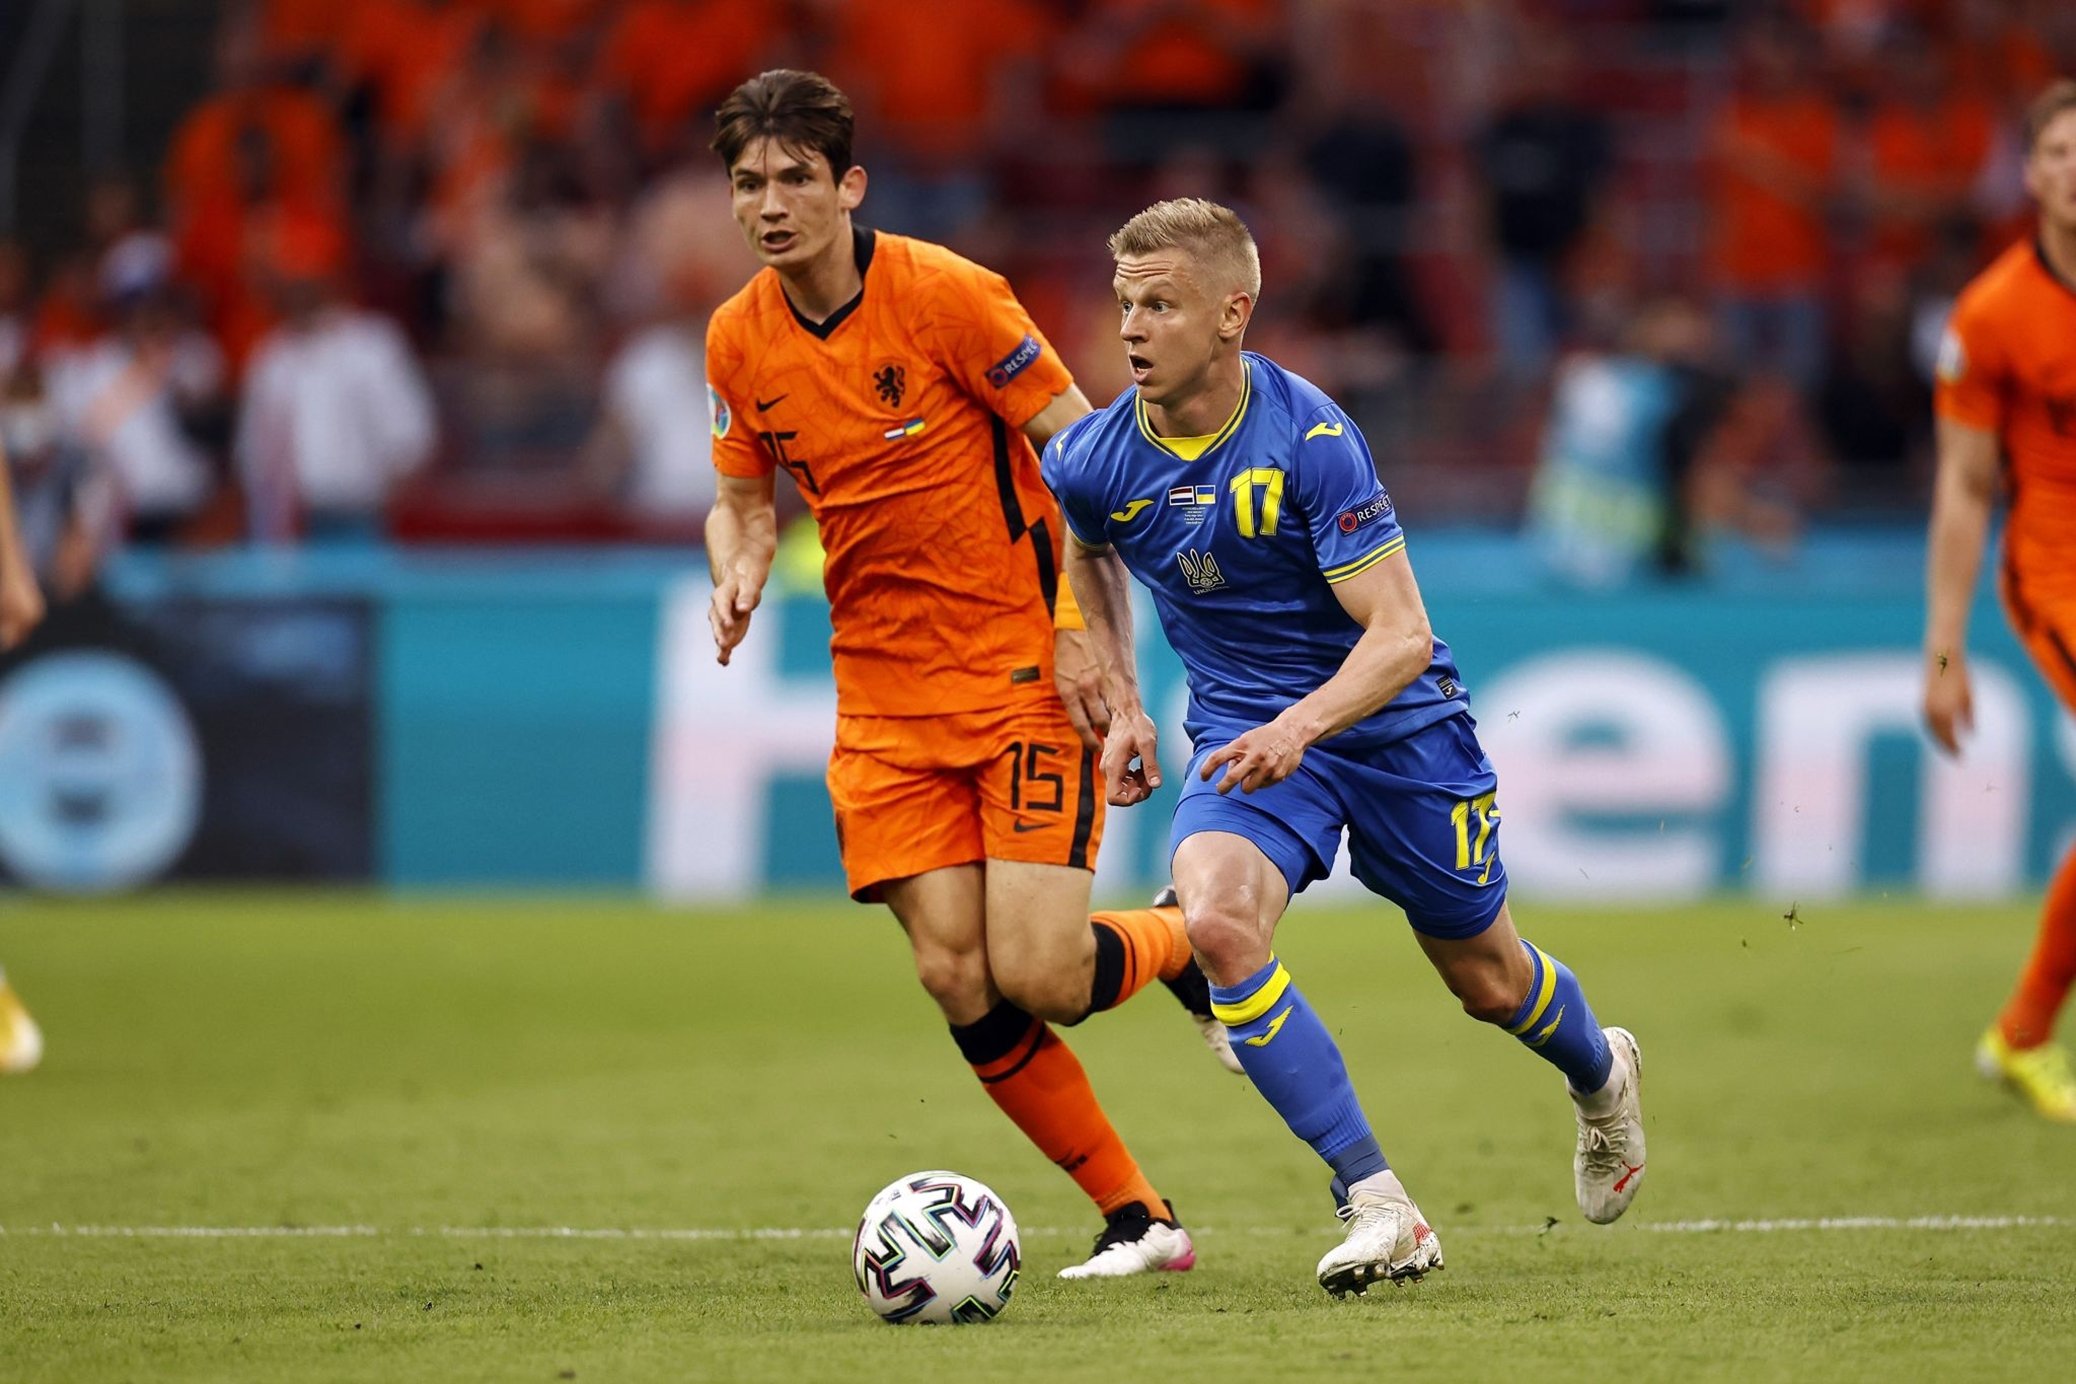 Euro 2020 : Les Pays-Bas démarrent fort face à l’Ukraine